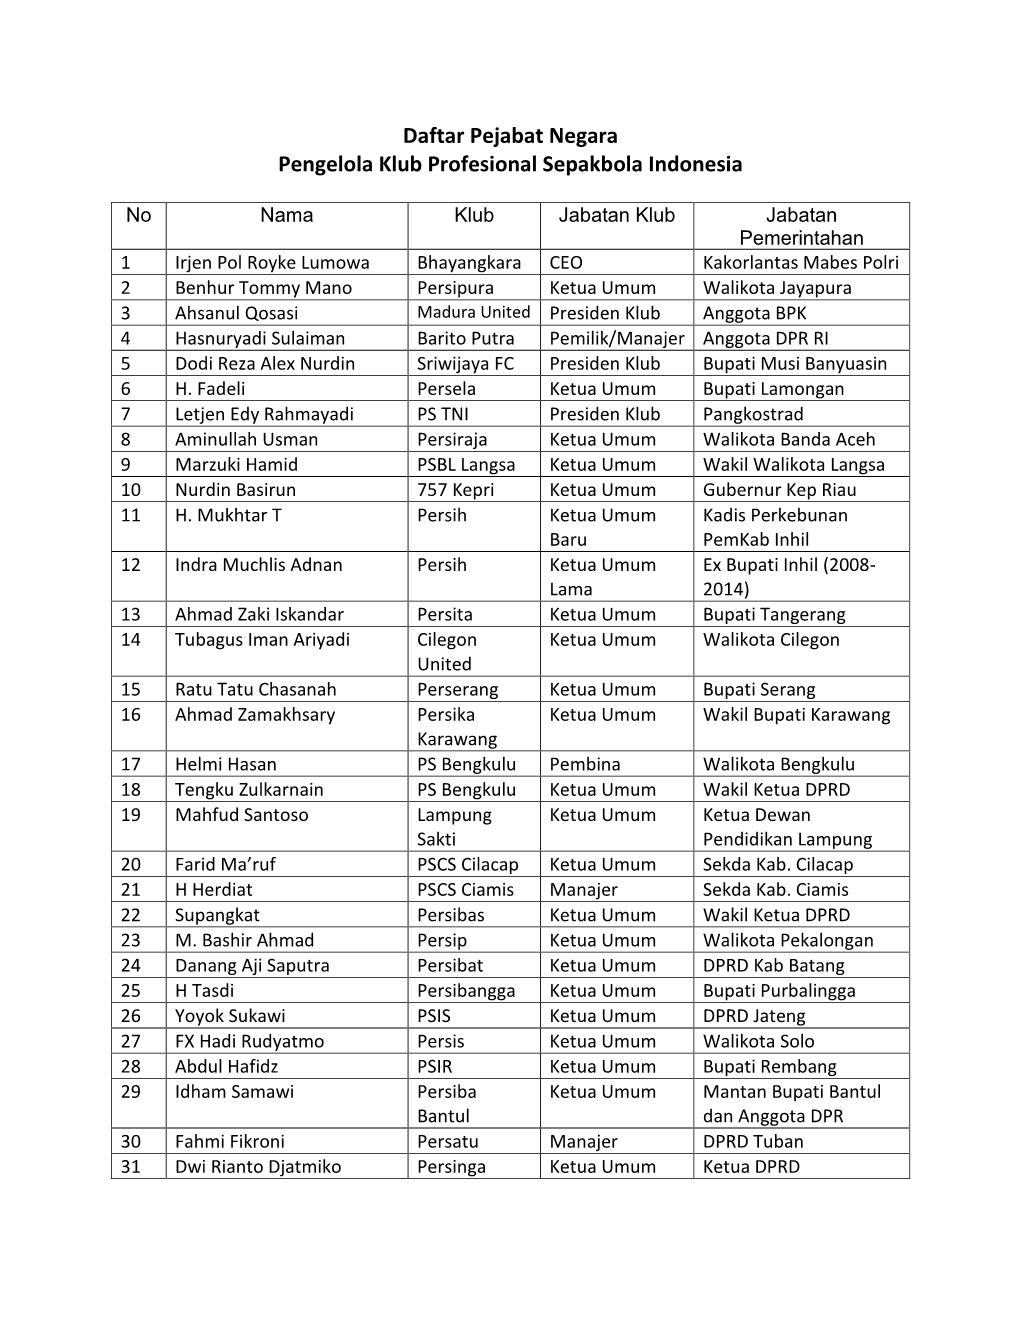 Daftar Pejabat Negara Pengelola Klub Profesional Sepakbola Indonesia